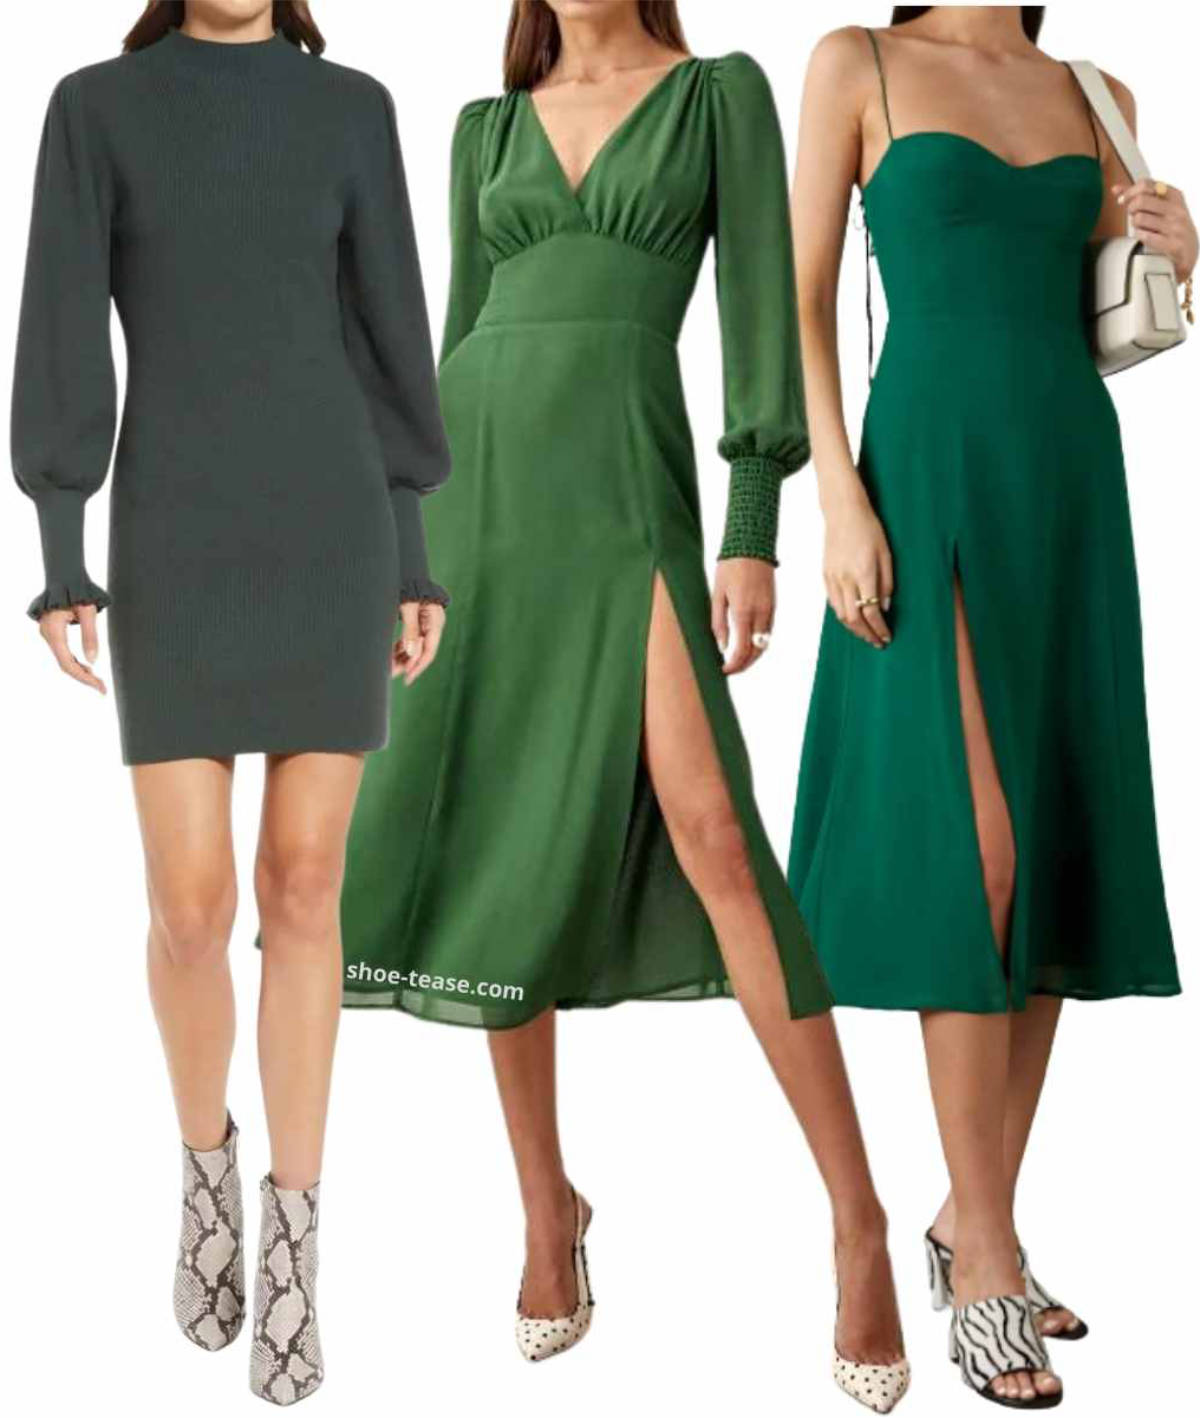 Emerald Green | Green satin dress, Emerald green satin dress, Green midi  dress